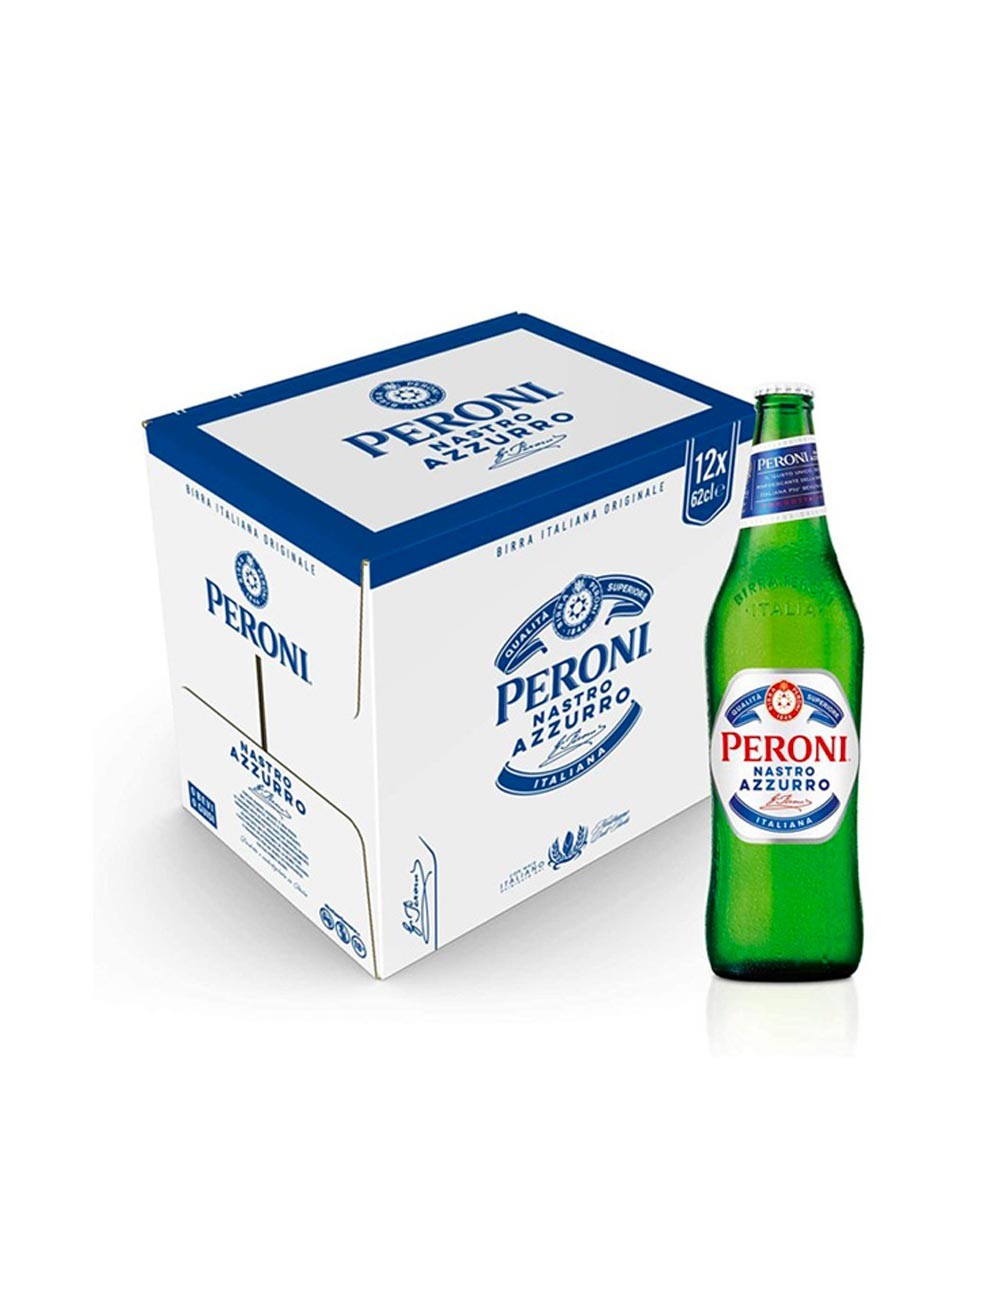 Peroni Nastro Azzurro beer 12 x 62 cl case